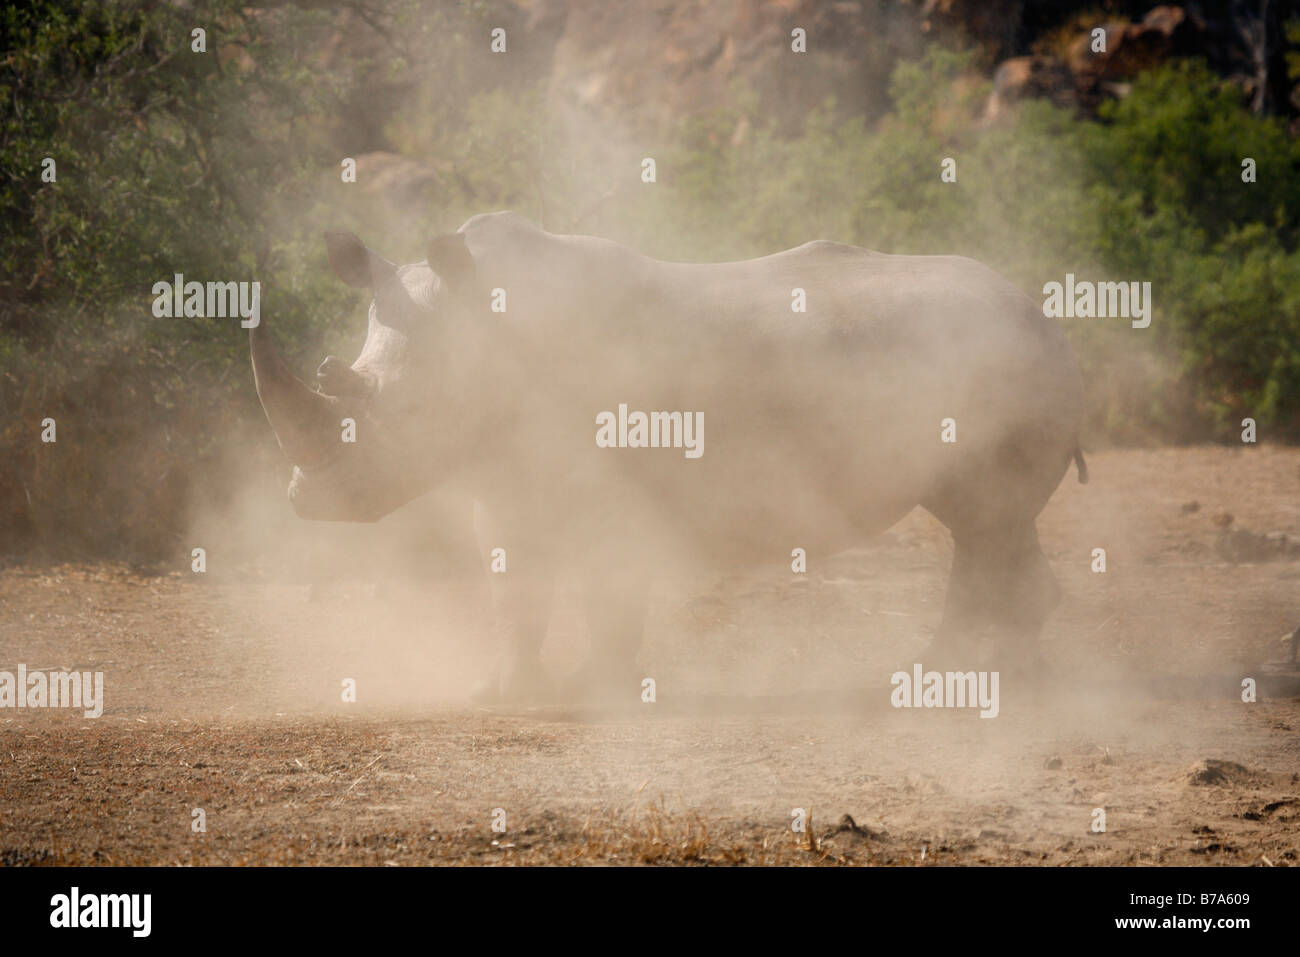 Un rinoceronte blanco oculto en una nube de polvo Foto de stock